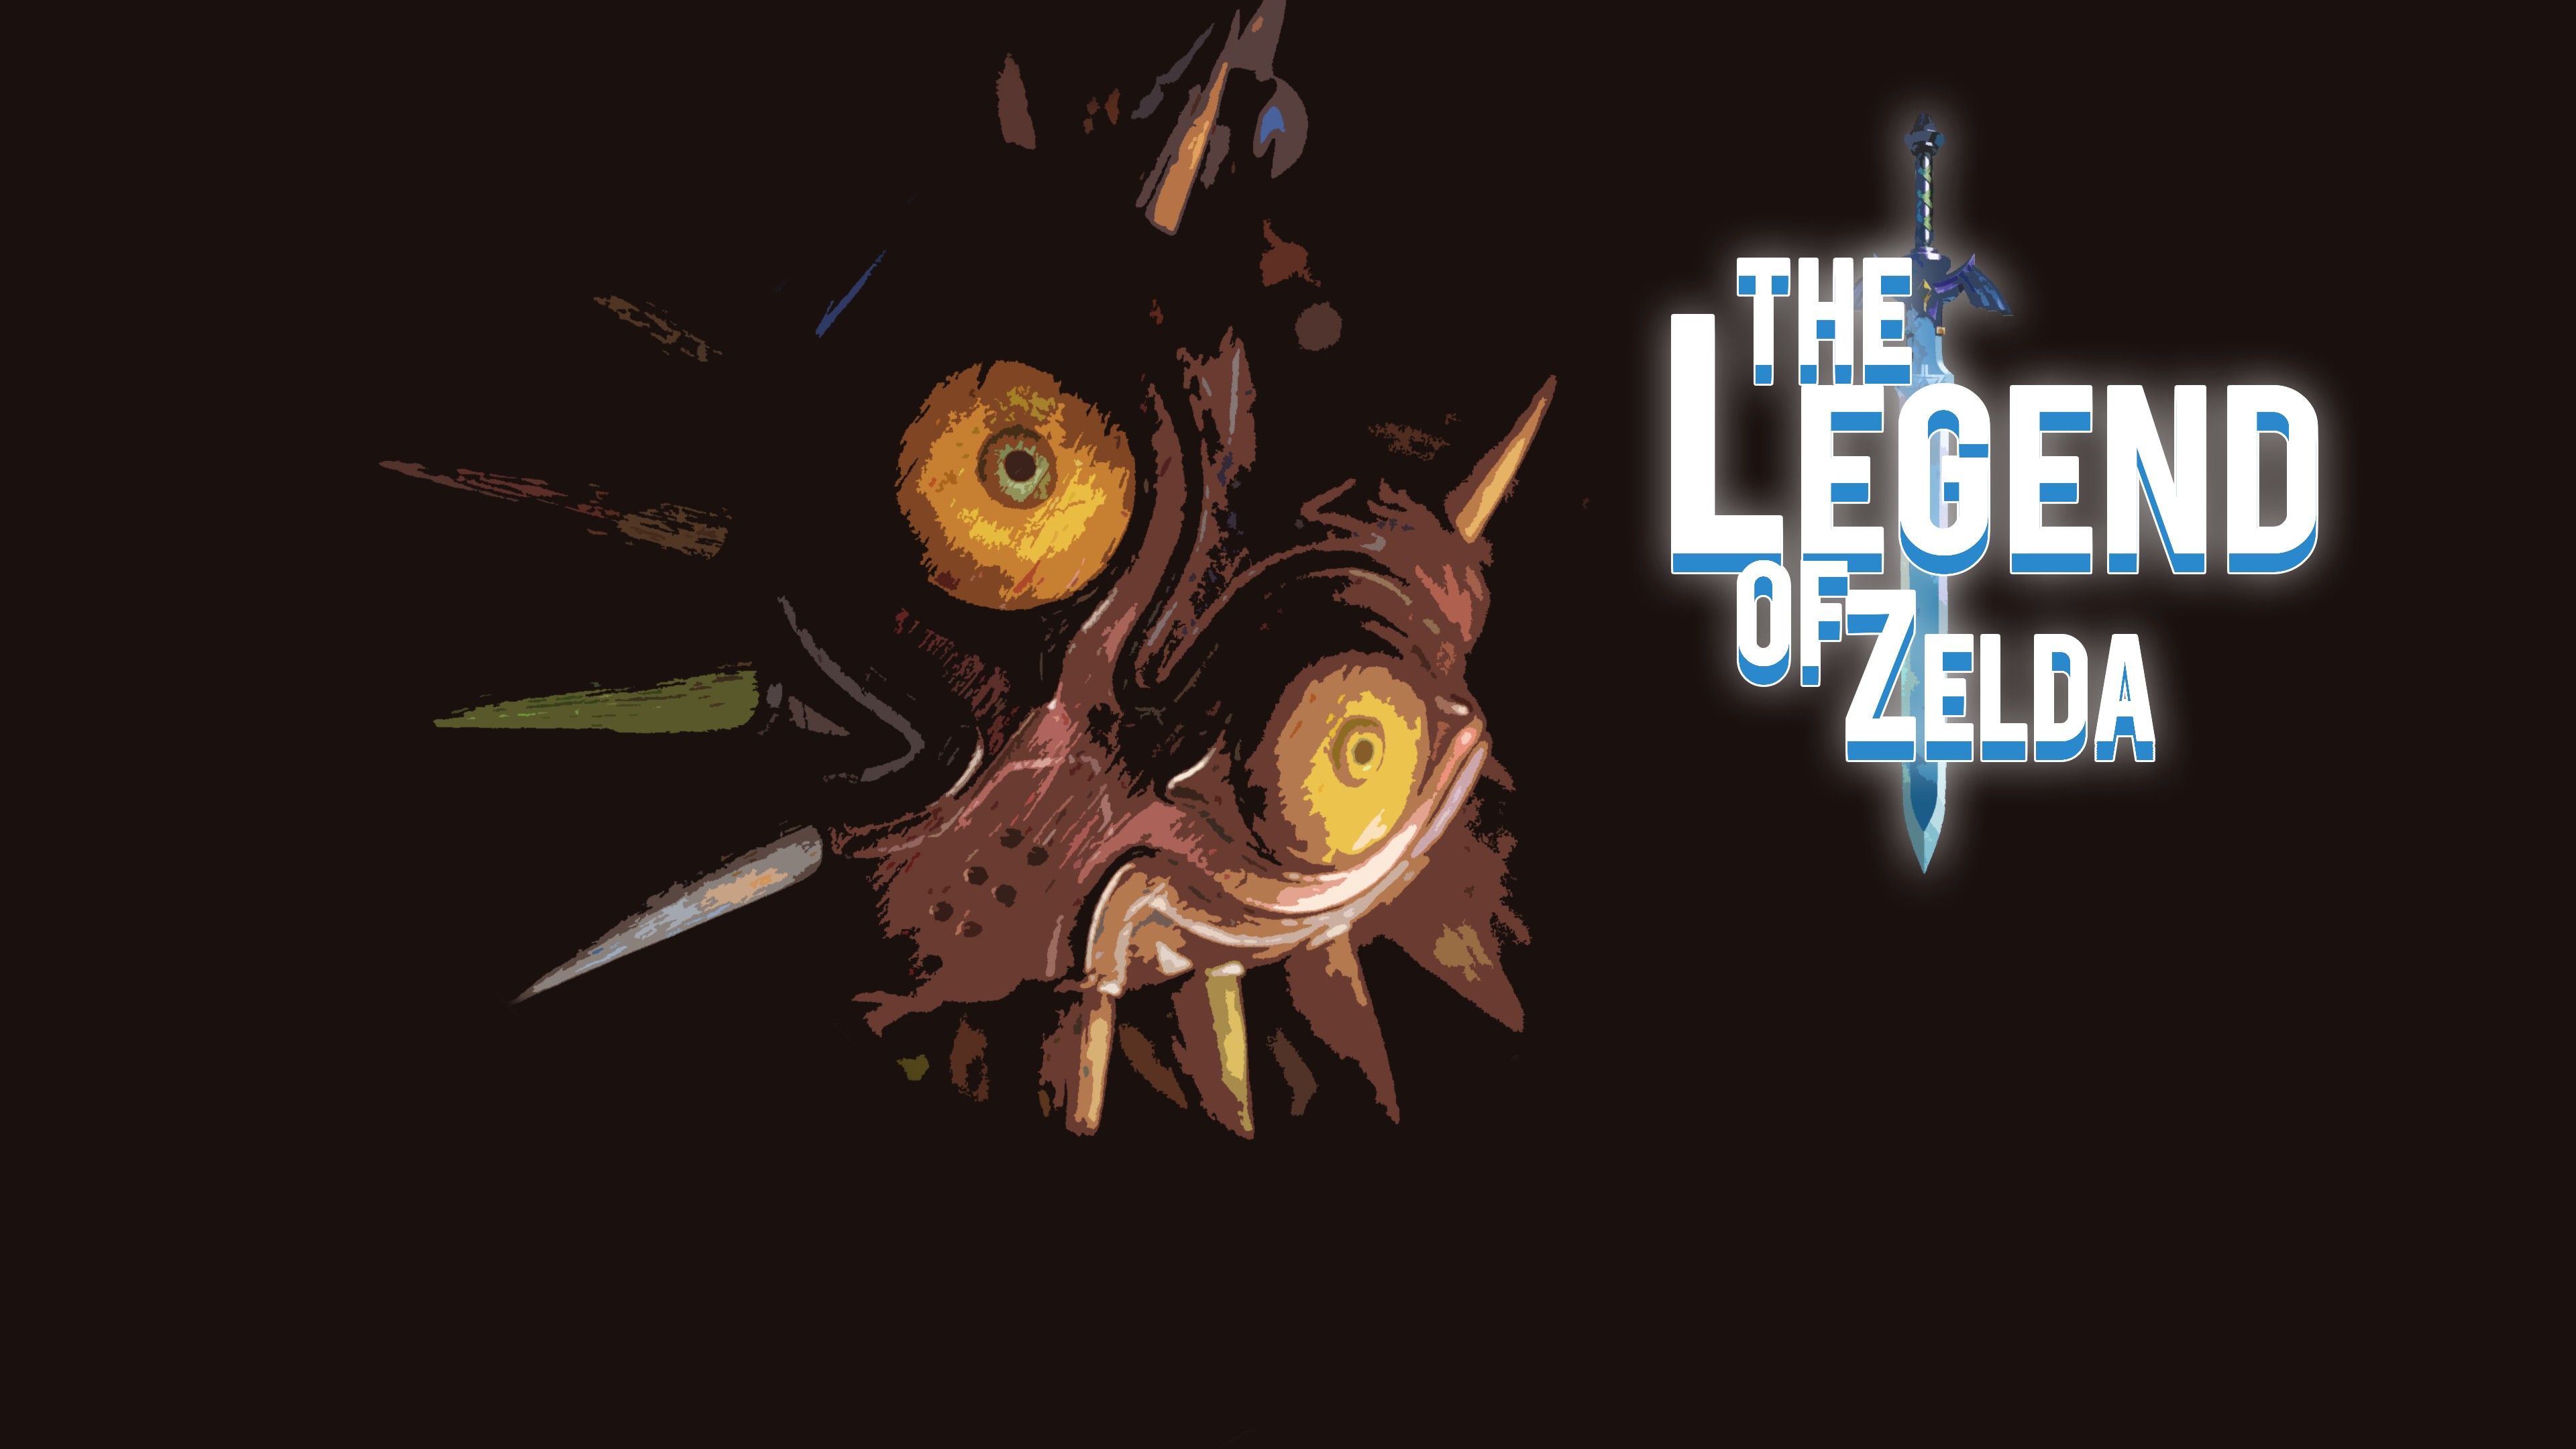 Link, Zelda, Ganondorf, The Legend of Zelda: Majoras Mask, The Legend of Zelda Wallpaper